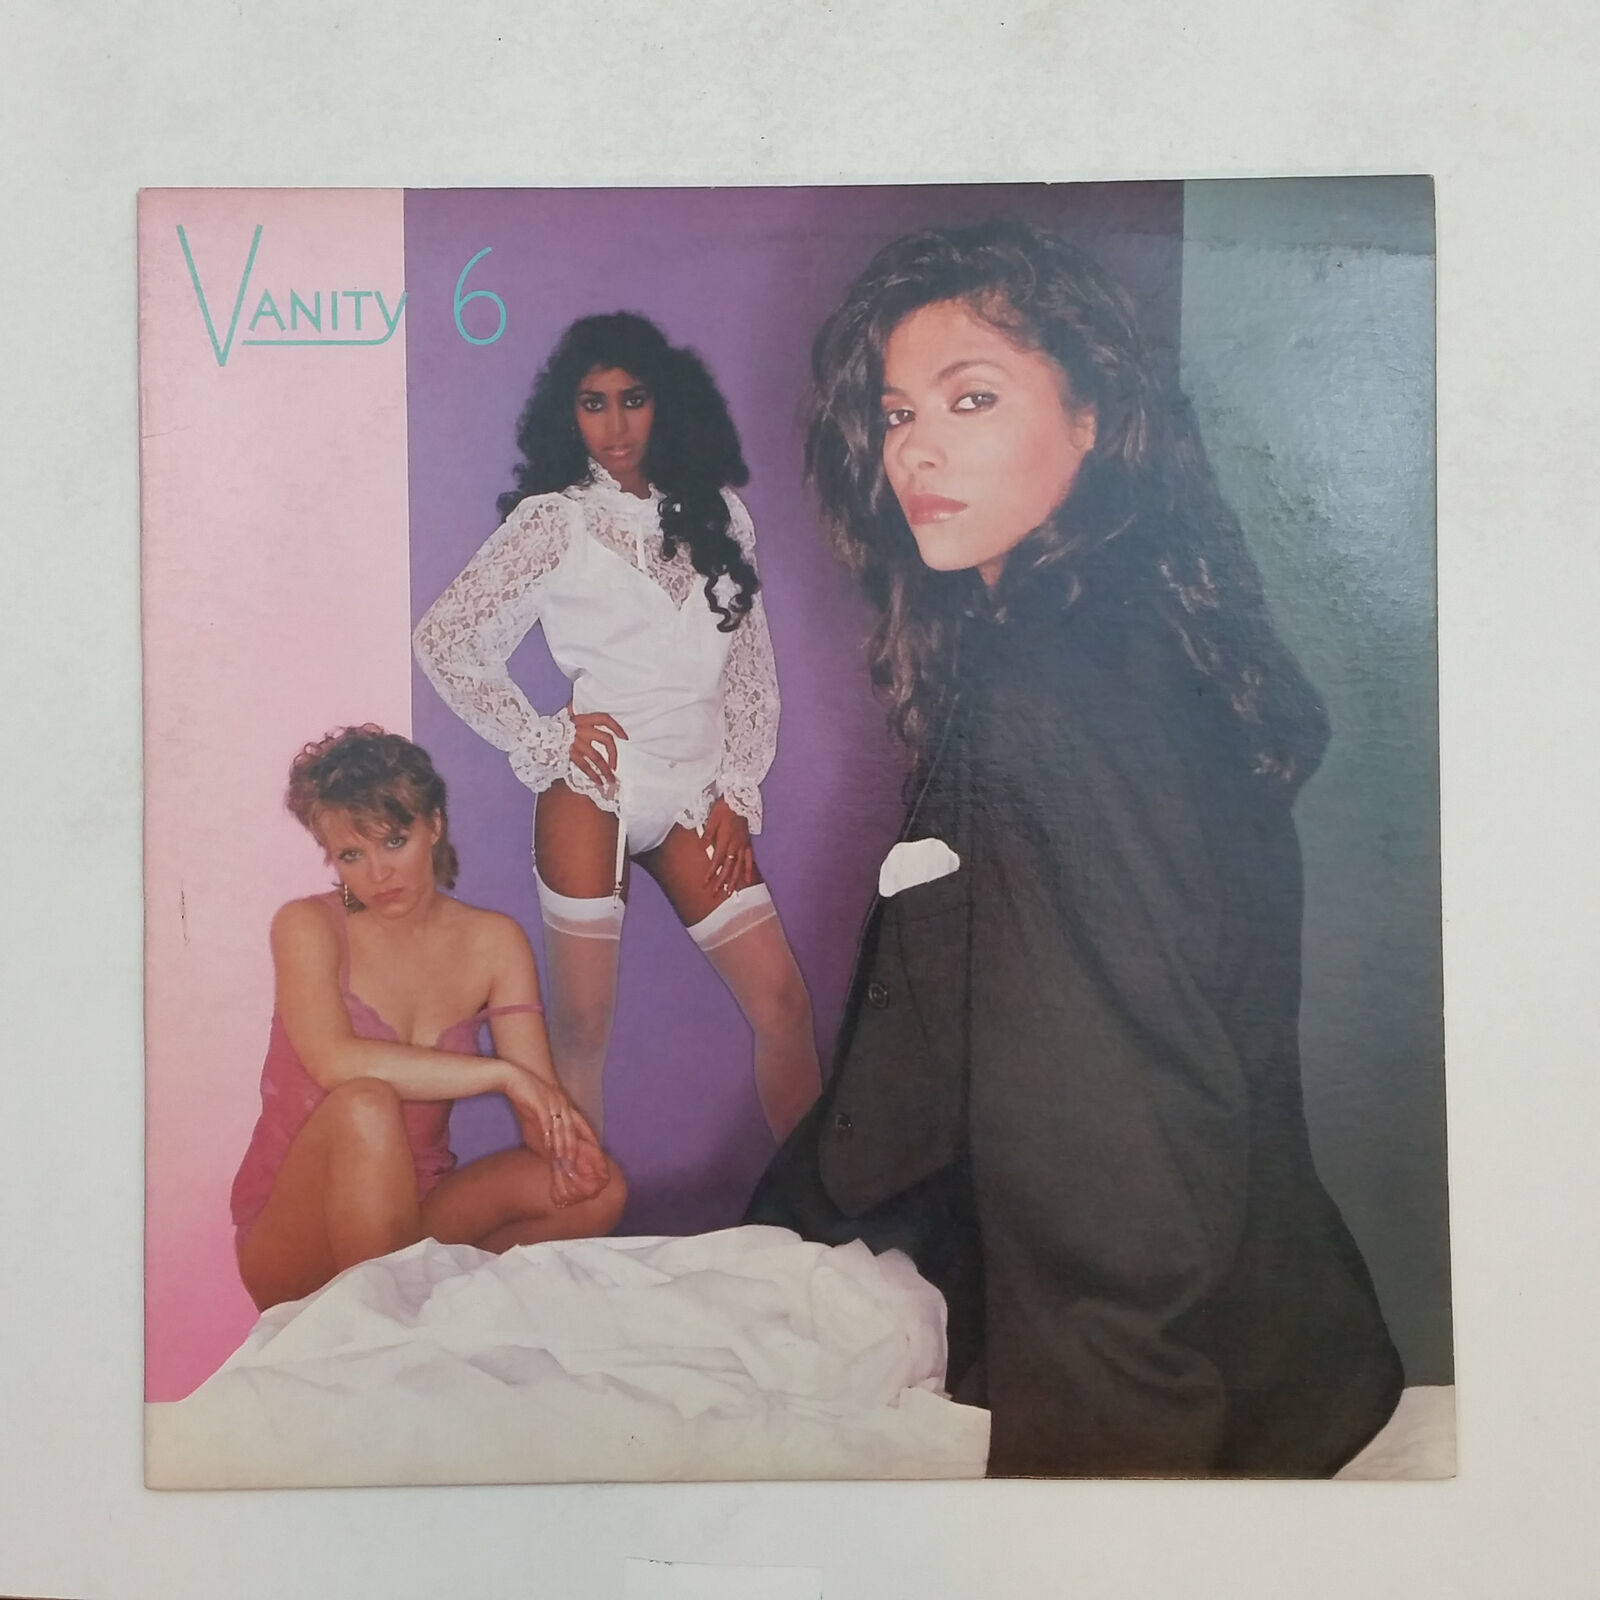 VANITY 6 s/t 123716 LP Vinyl VG++ Cover VG+nr++ 1982 Prince \